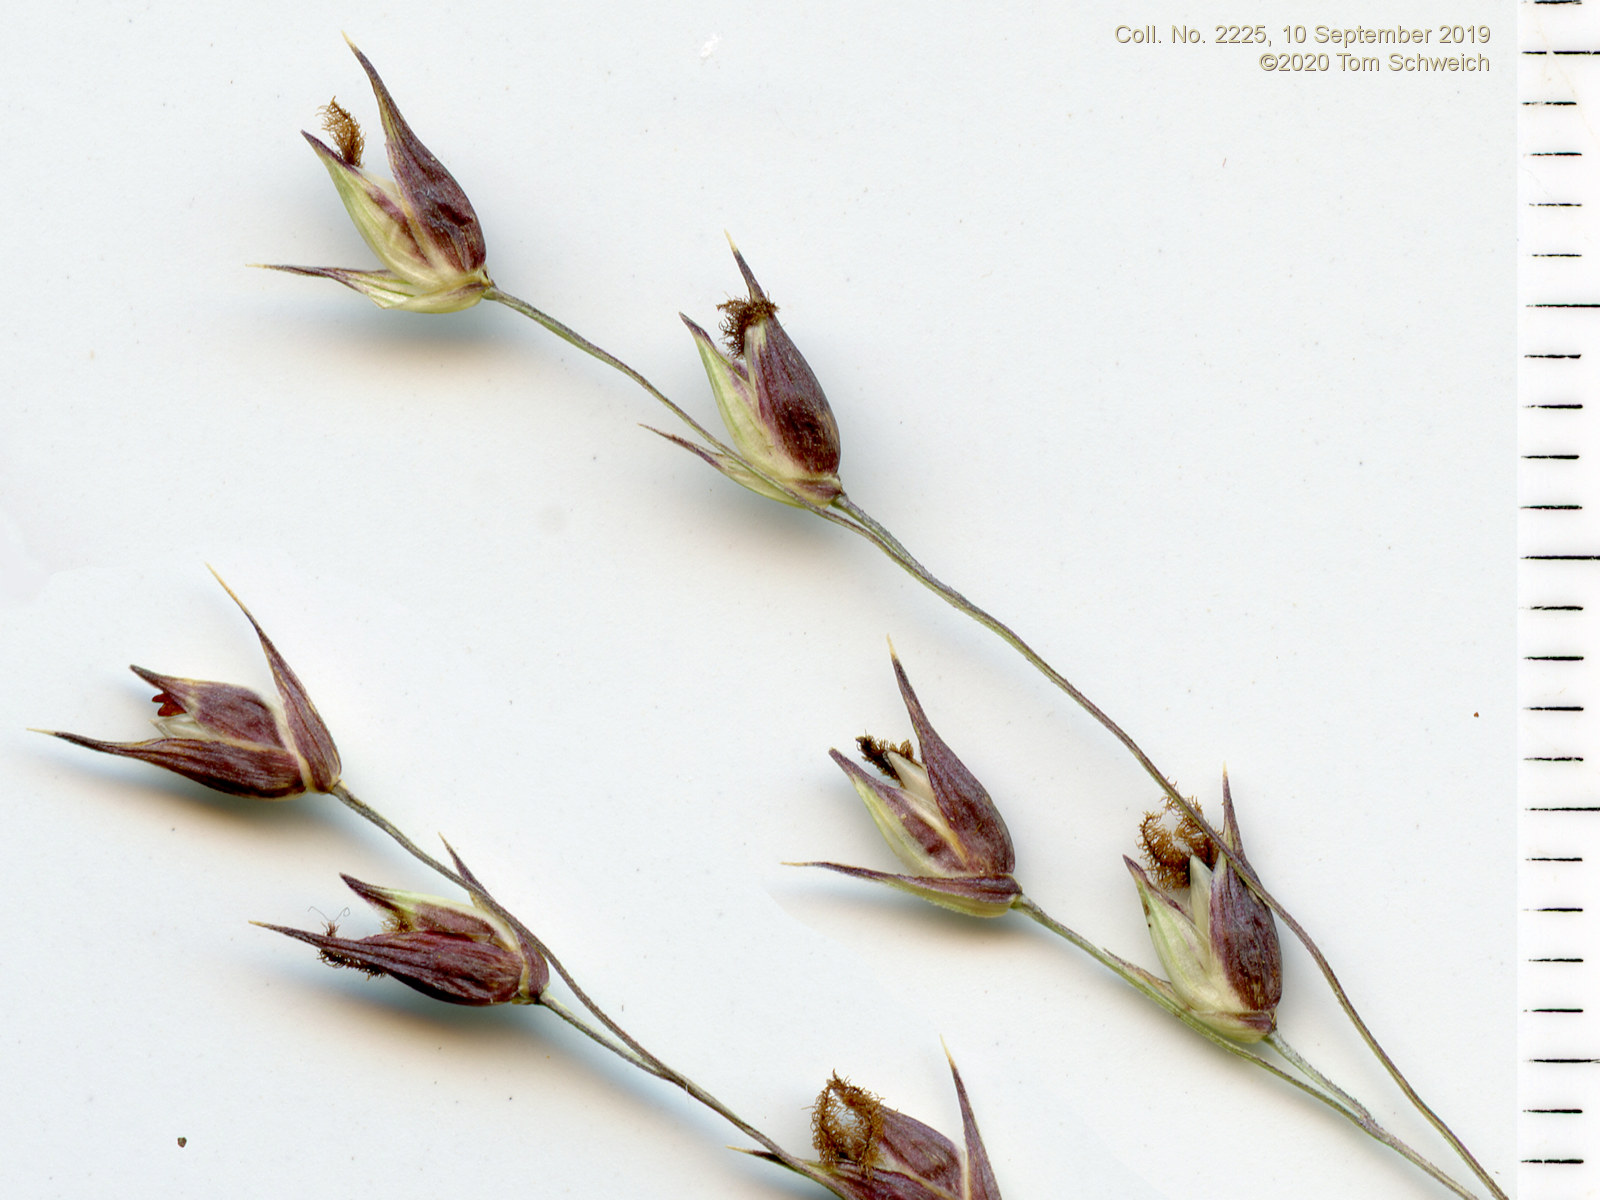 Poaceae Panicum virgatum